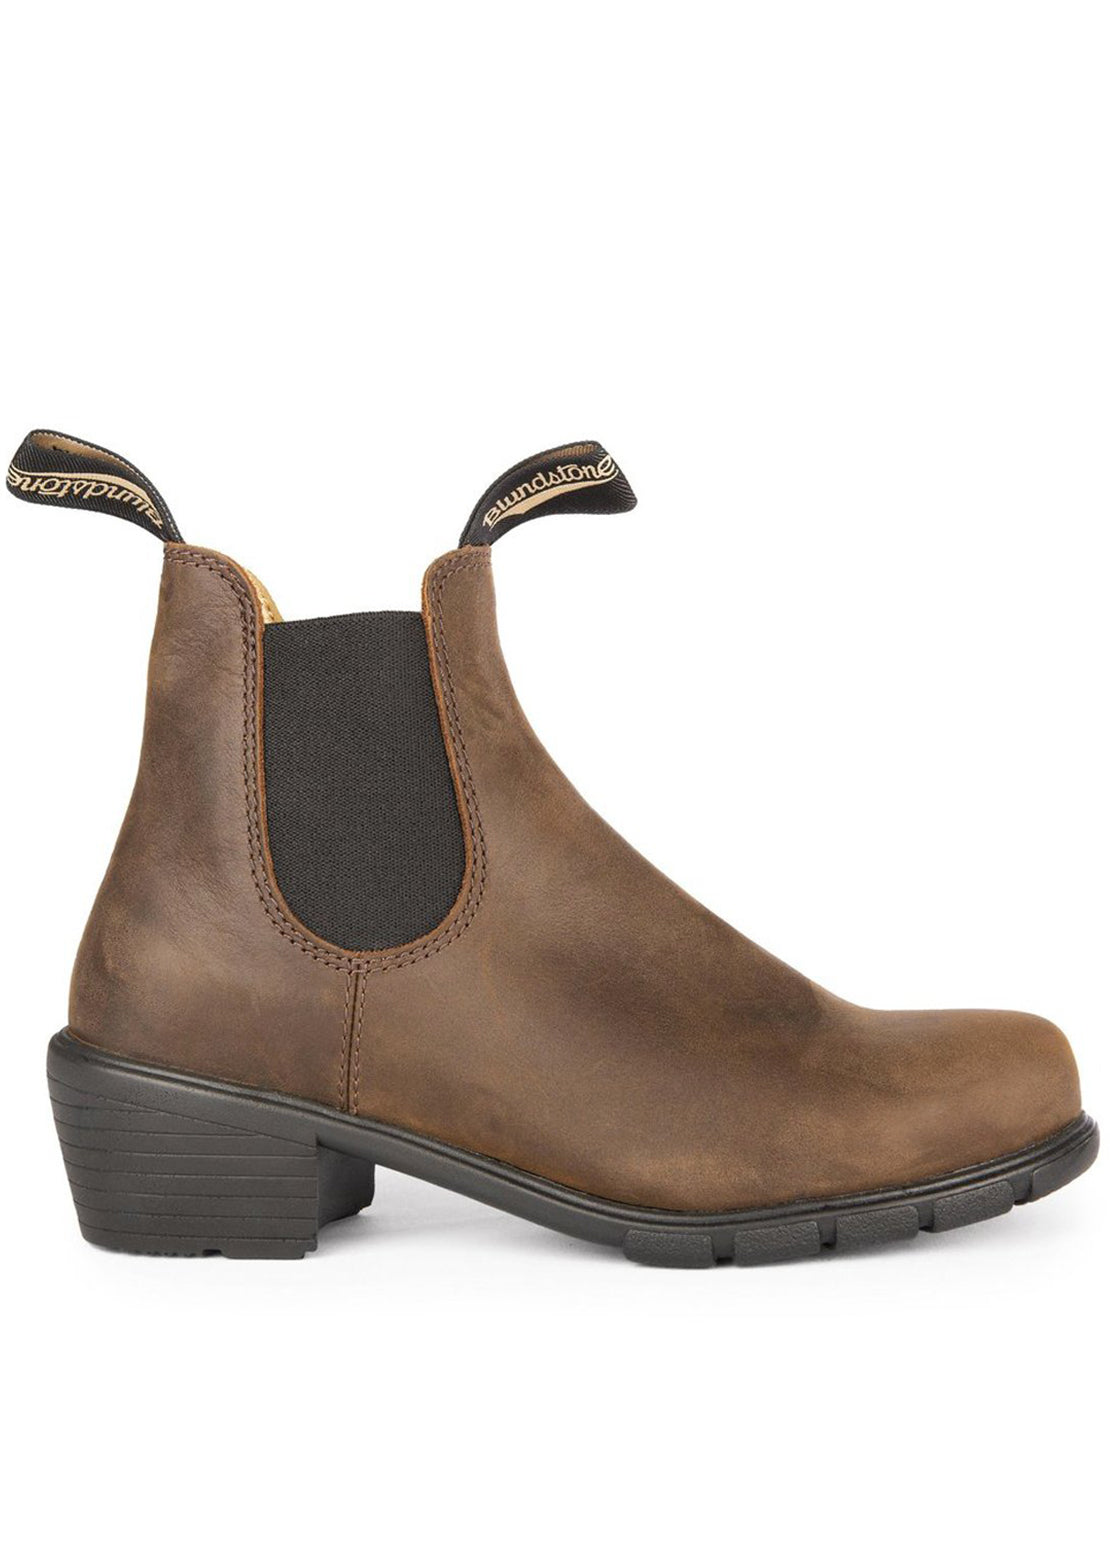 Blundstone Women’s 1673 Series Heel Boots Antic Brown